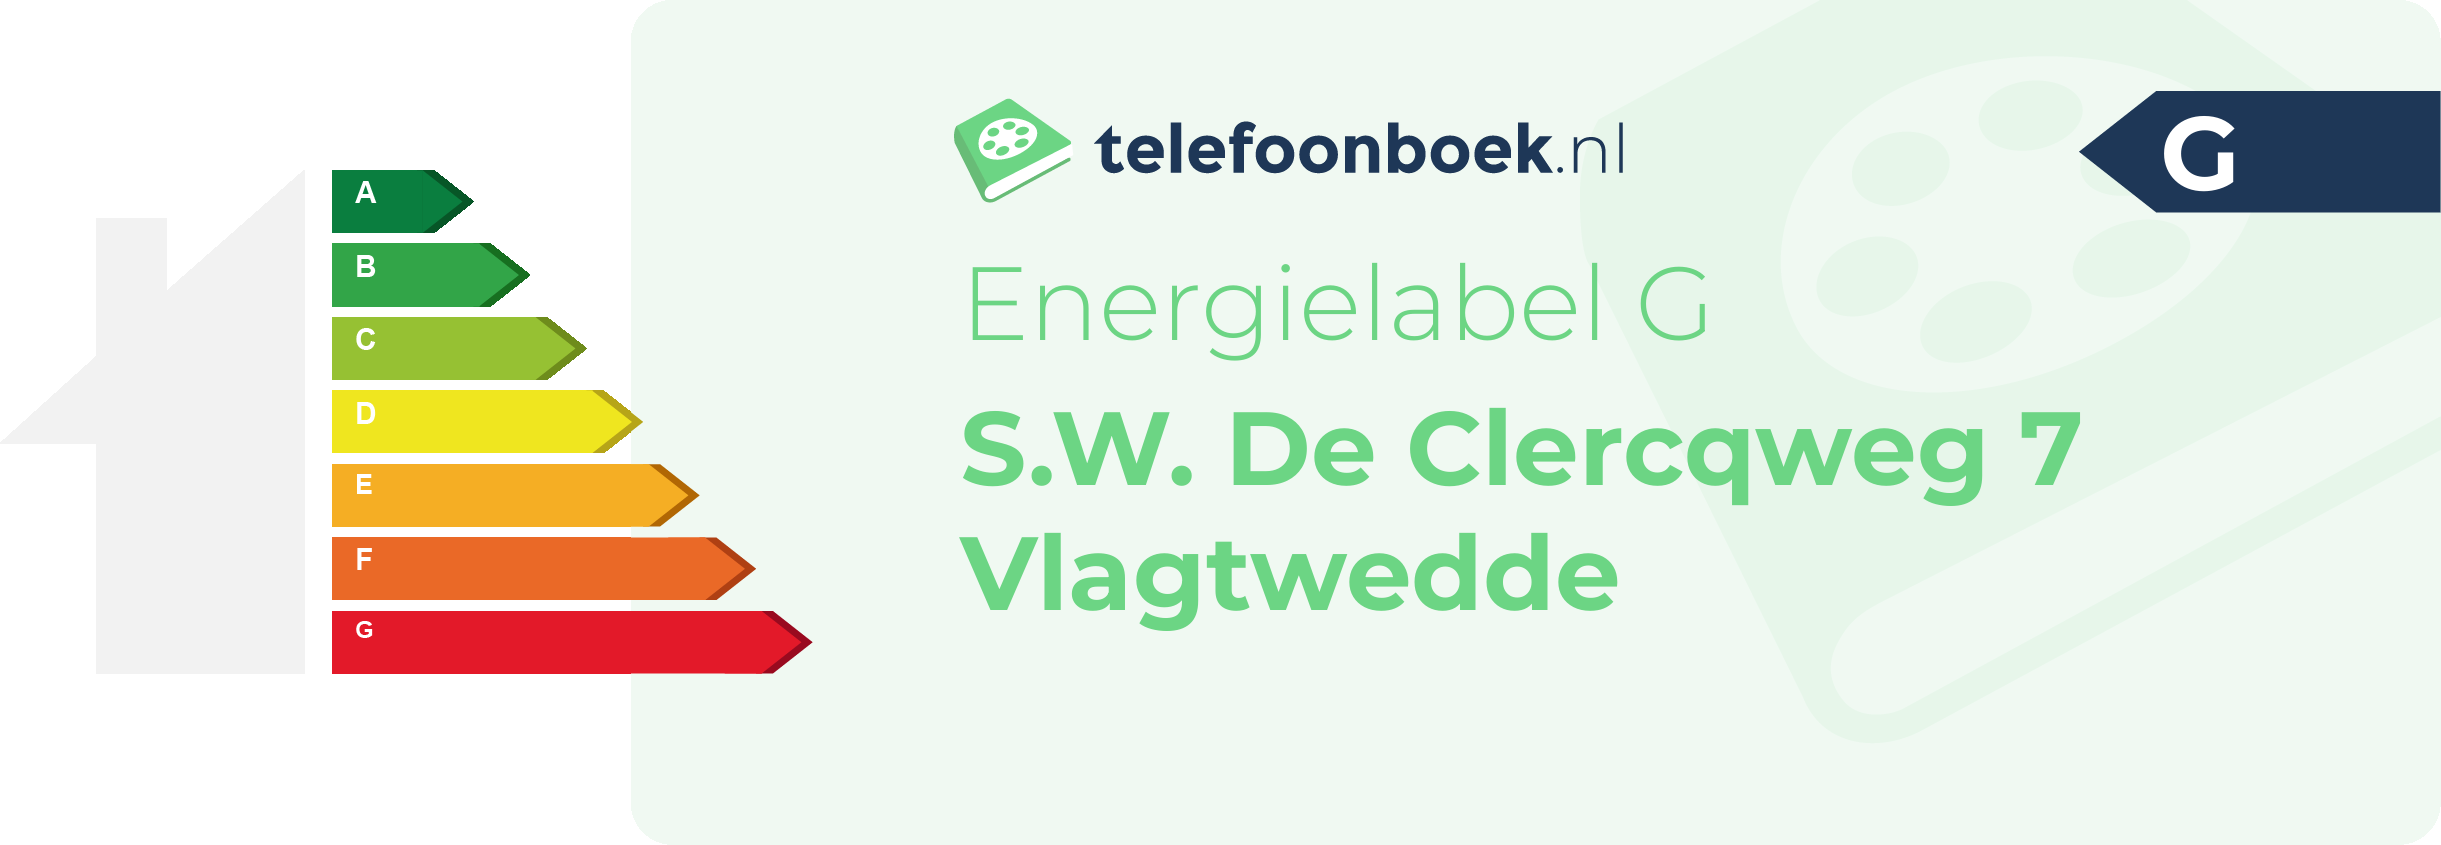 Energielabel S.W. De Clercqweg 7 Vlagtwedde